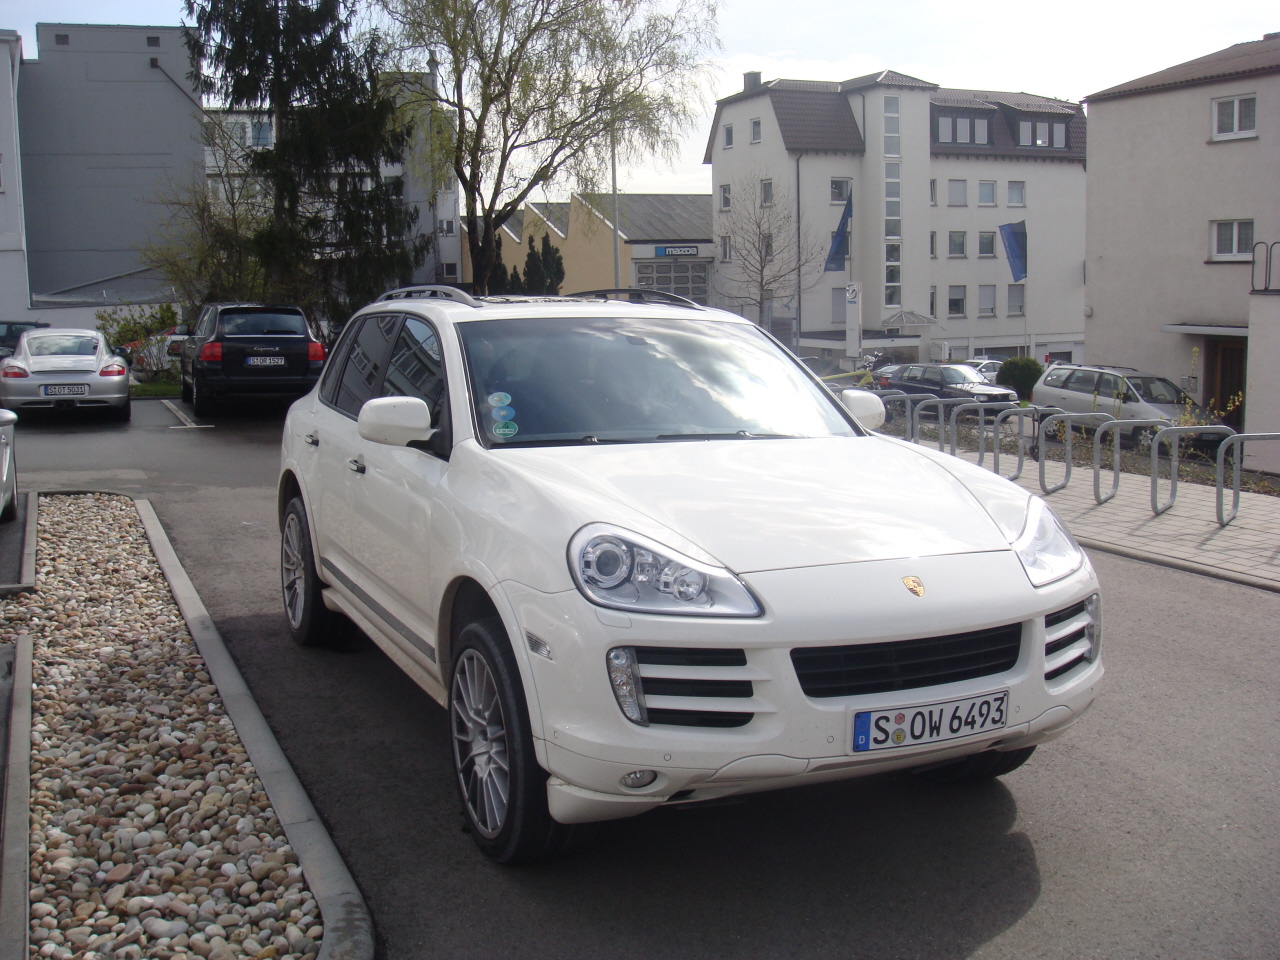 Visita Rapida a Porsche / Fast Visit to Porsche-cayennes05.JPG